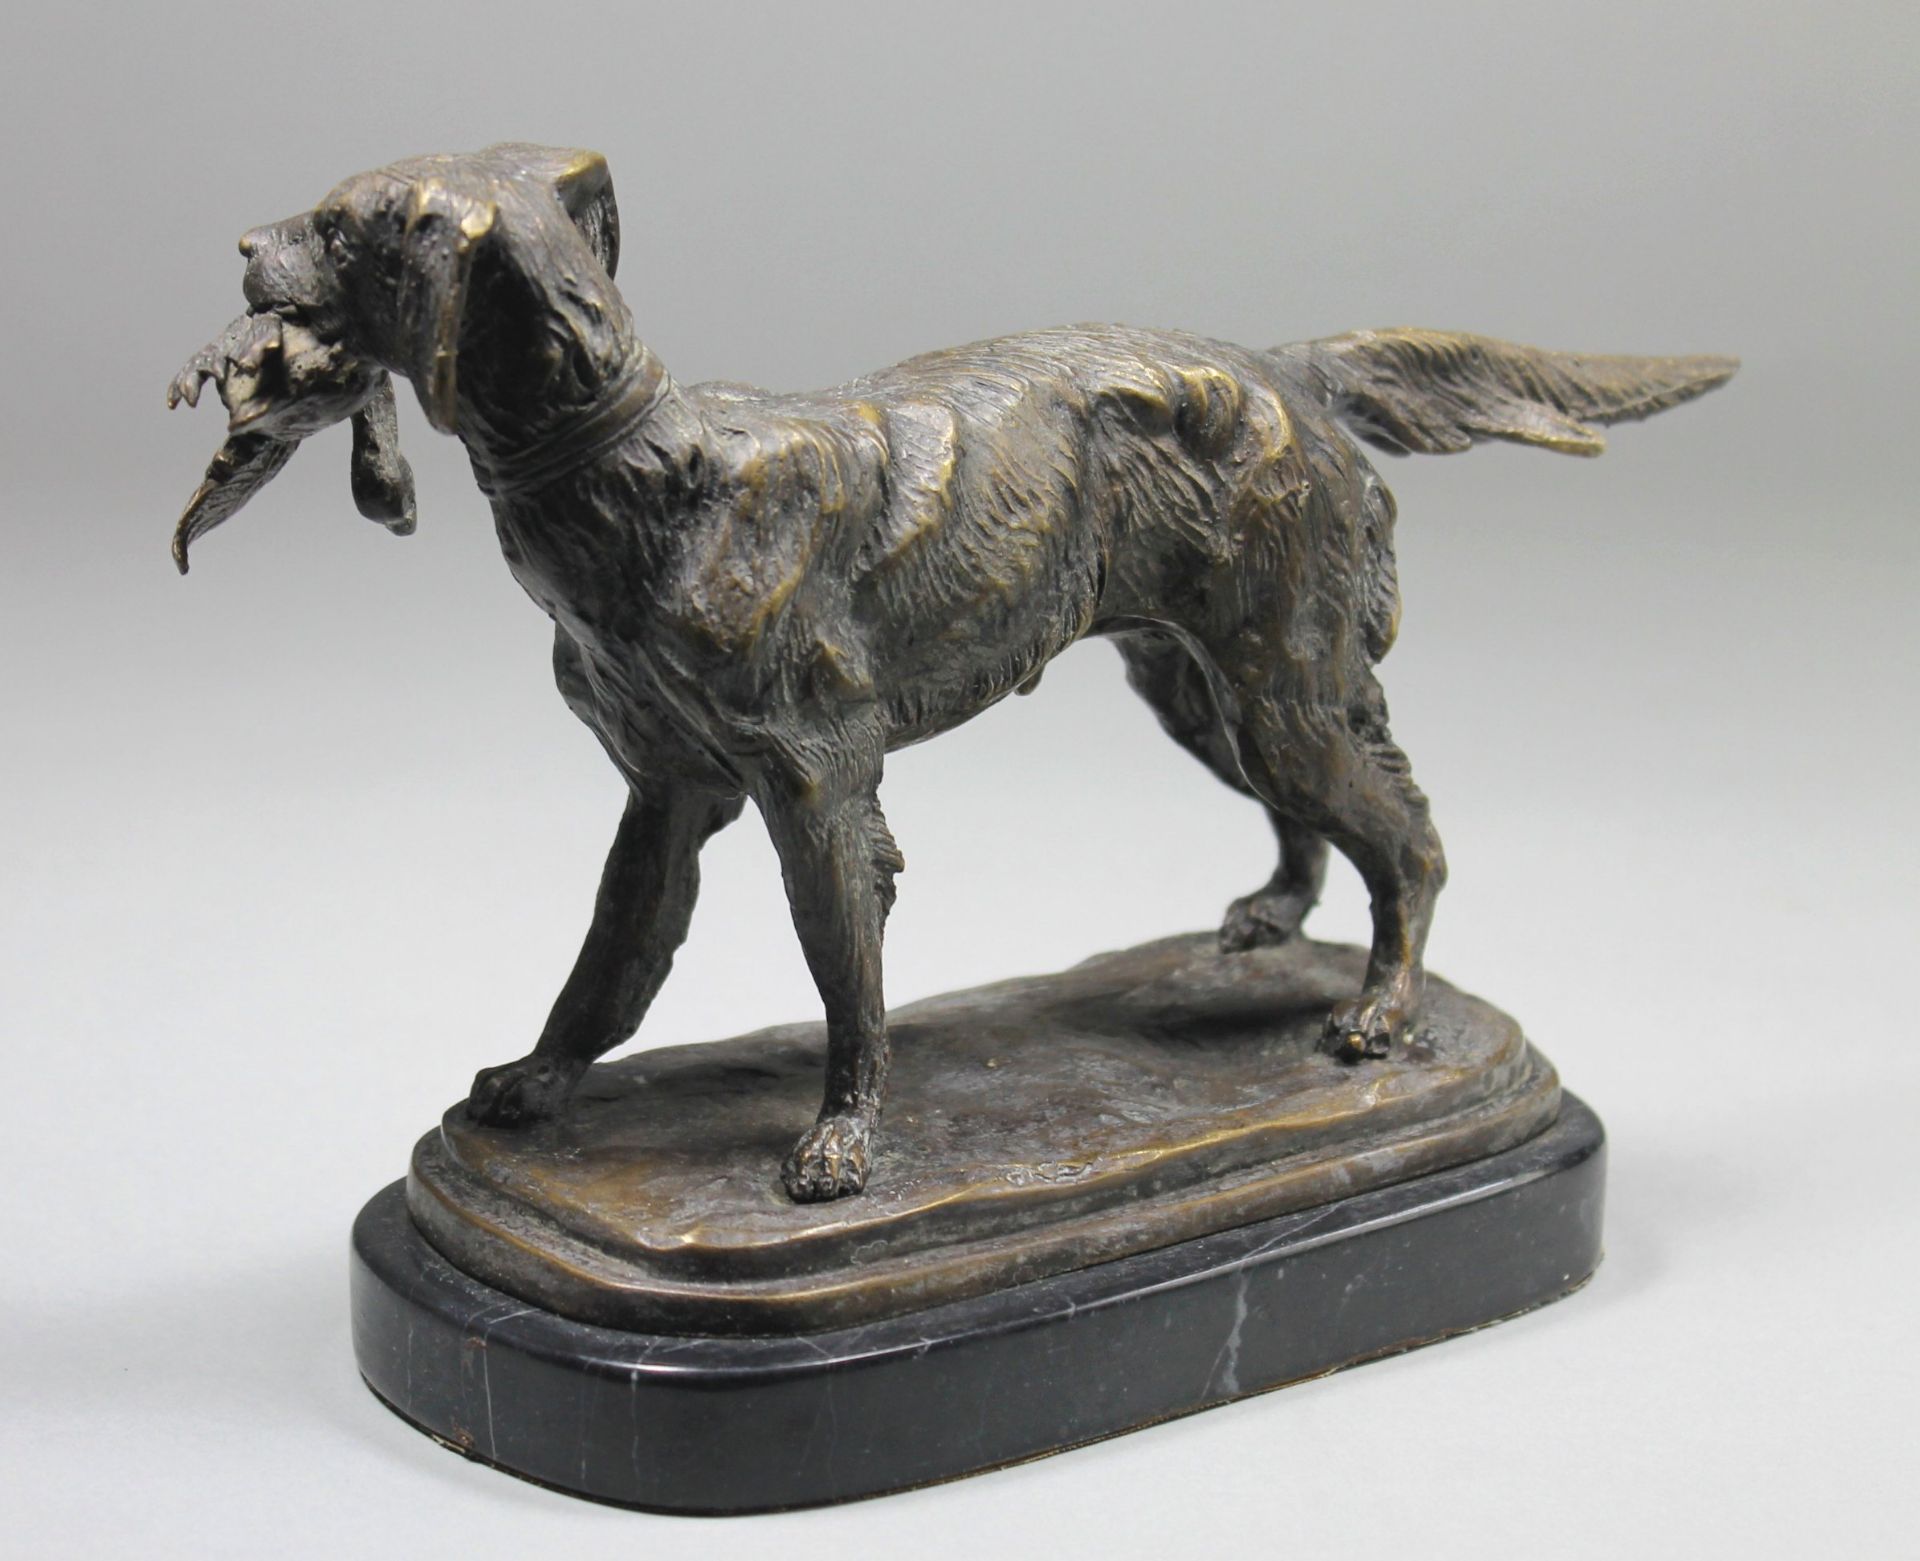 1 Bronzefigur auf Marmorplinthe "Jagdhund mit Beute im Maul", keine Signatur erkennbar, ca. 18,5cm x - Bild 2 aus 4